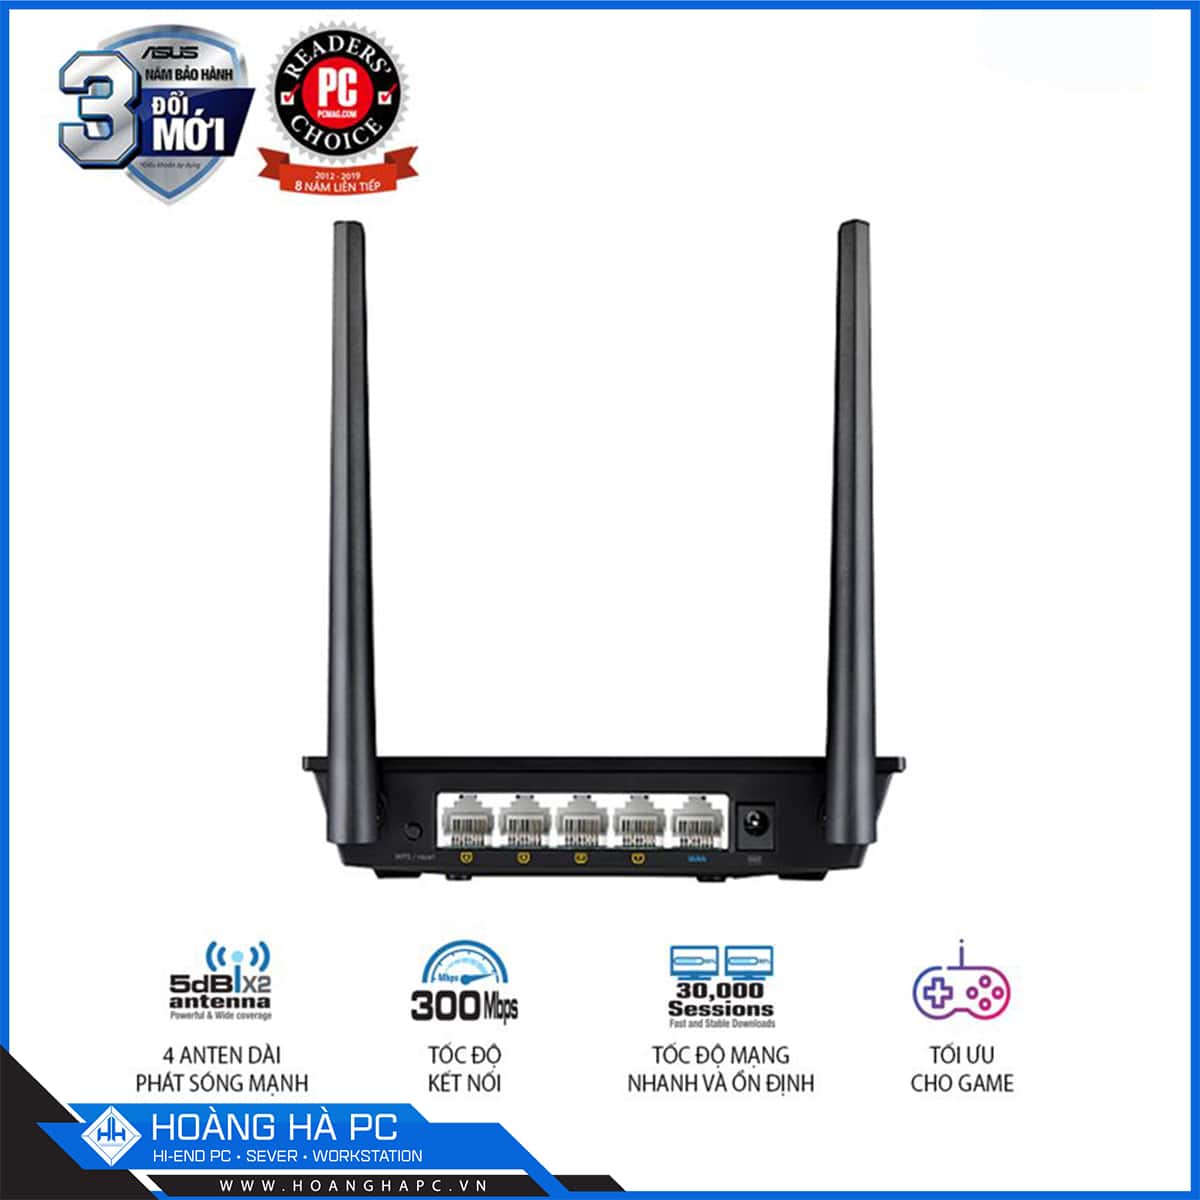 Bộ Phát Wifi ASUS RT-N12+ Chuẩn N300, Hỗ trợ tính năng lặp sóng